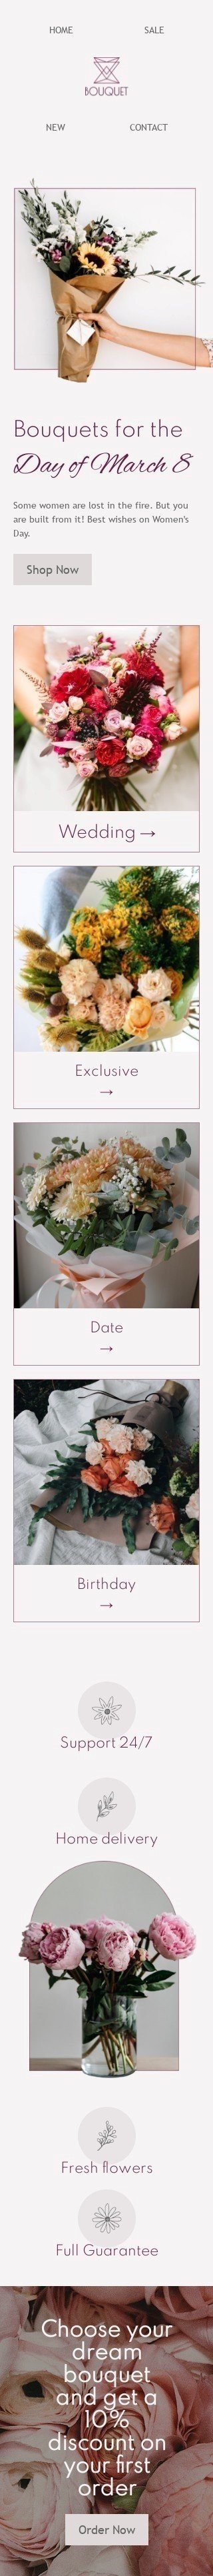 Plantilla de correo electrónico «Los mejores deseos en el día de la mujer» de Día de la Mujer para la industria de Regalos y flores Vista de móvil